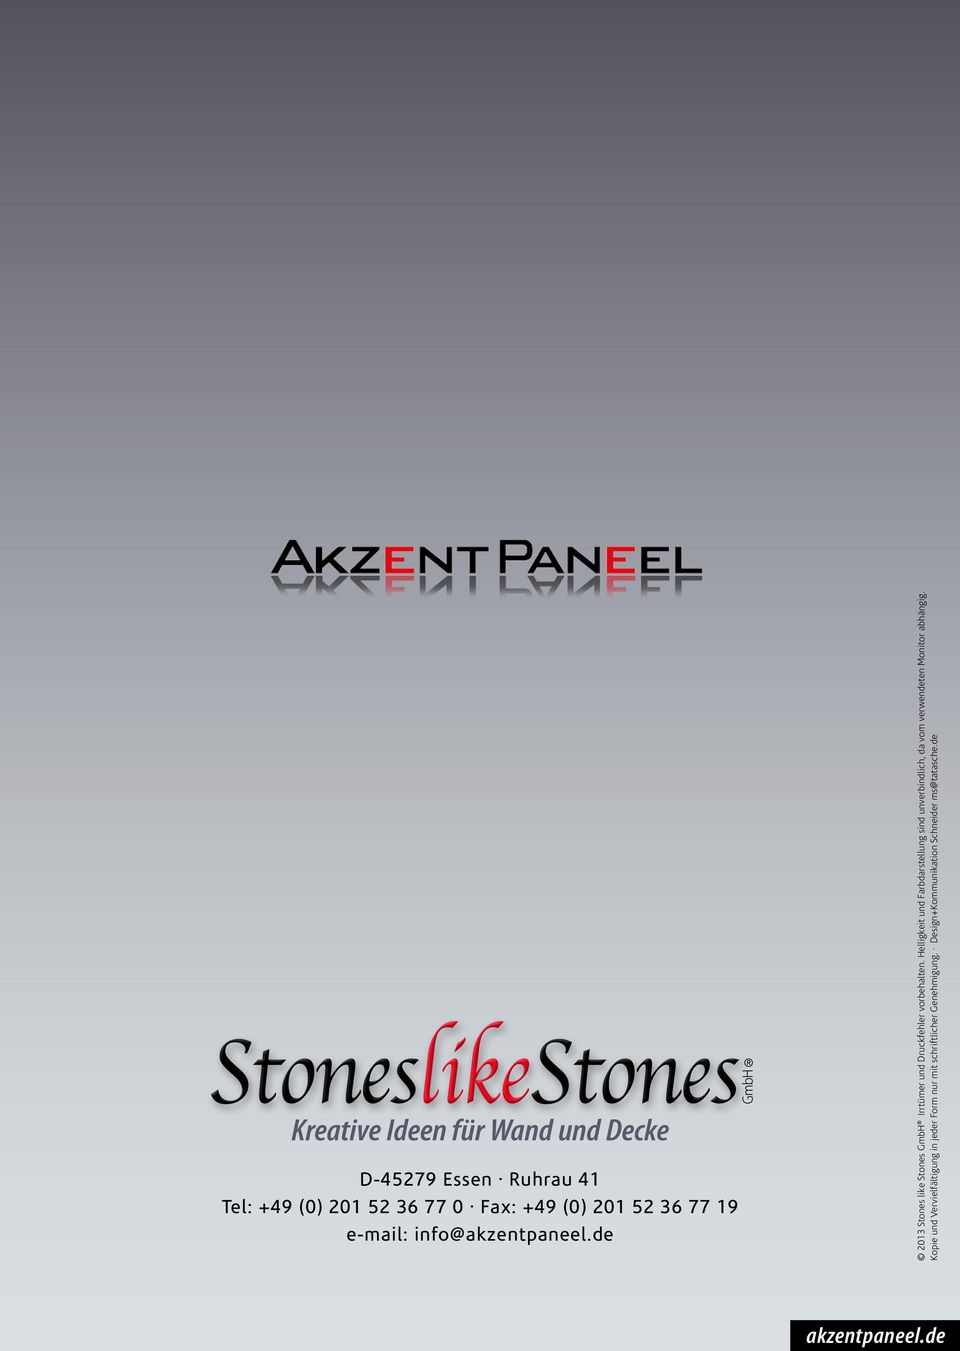 52 36 77 19 e-mail: info@de 2013 Stones like Stones GmbH Irrtümer und Druckfehler vorbehalten.